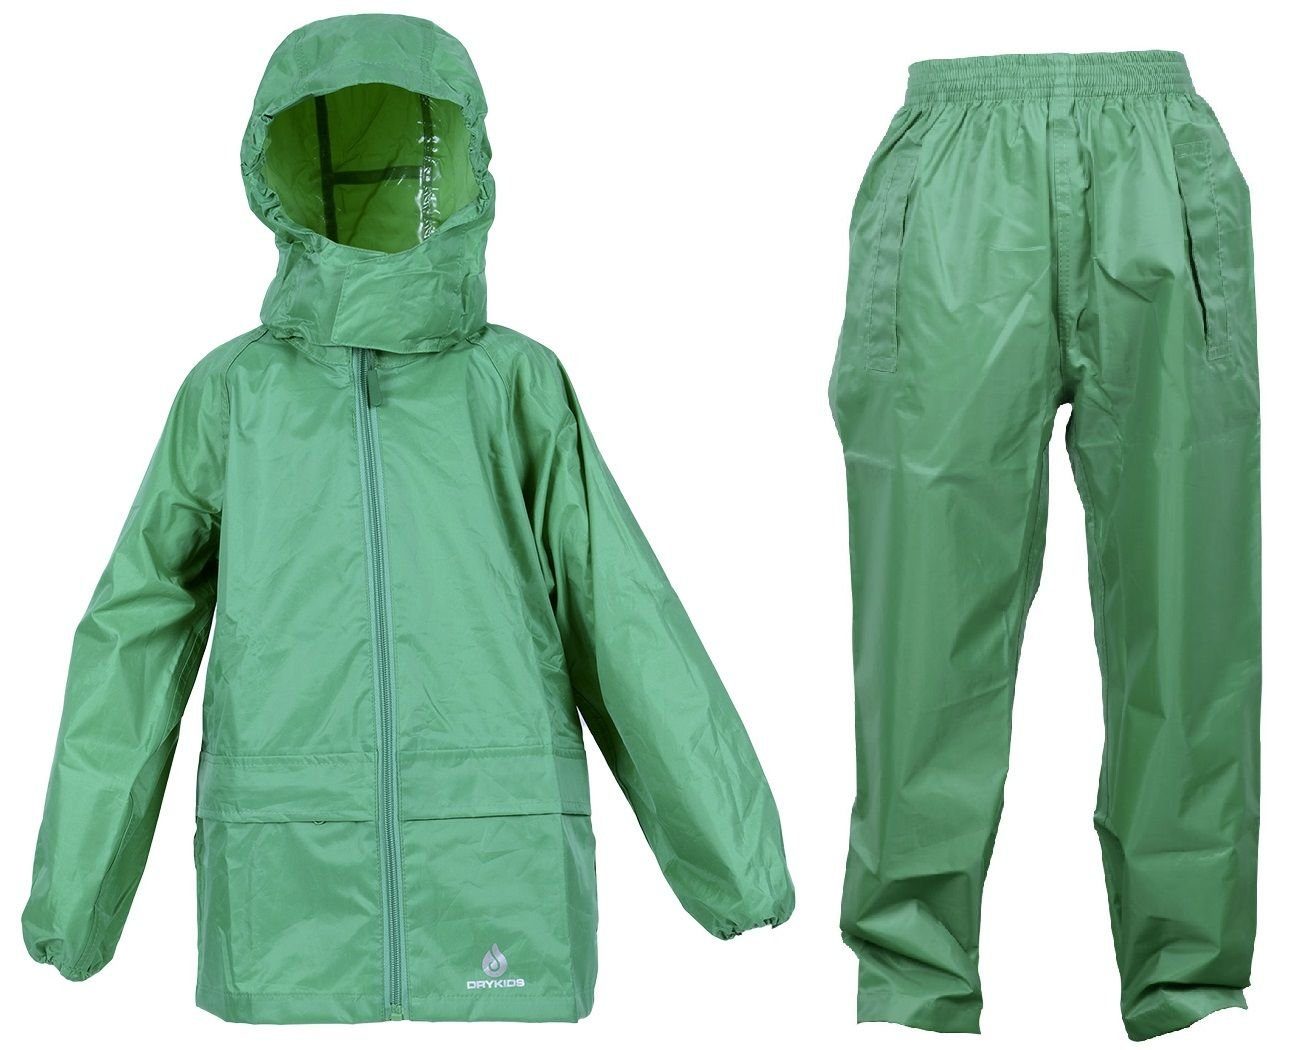 DRY KIDS Regenanzug (1-tlg), Wasserdichtes reflektierende Regenbekleidung Grün Kinder Regenanzug-Set